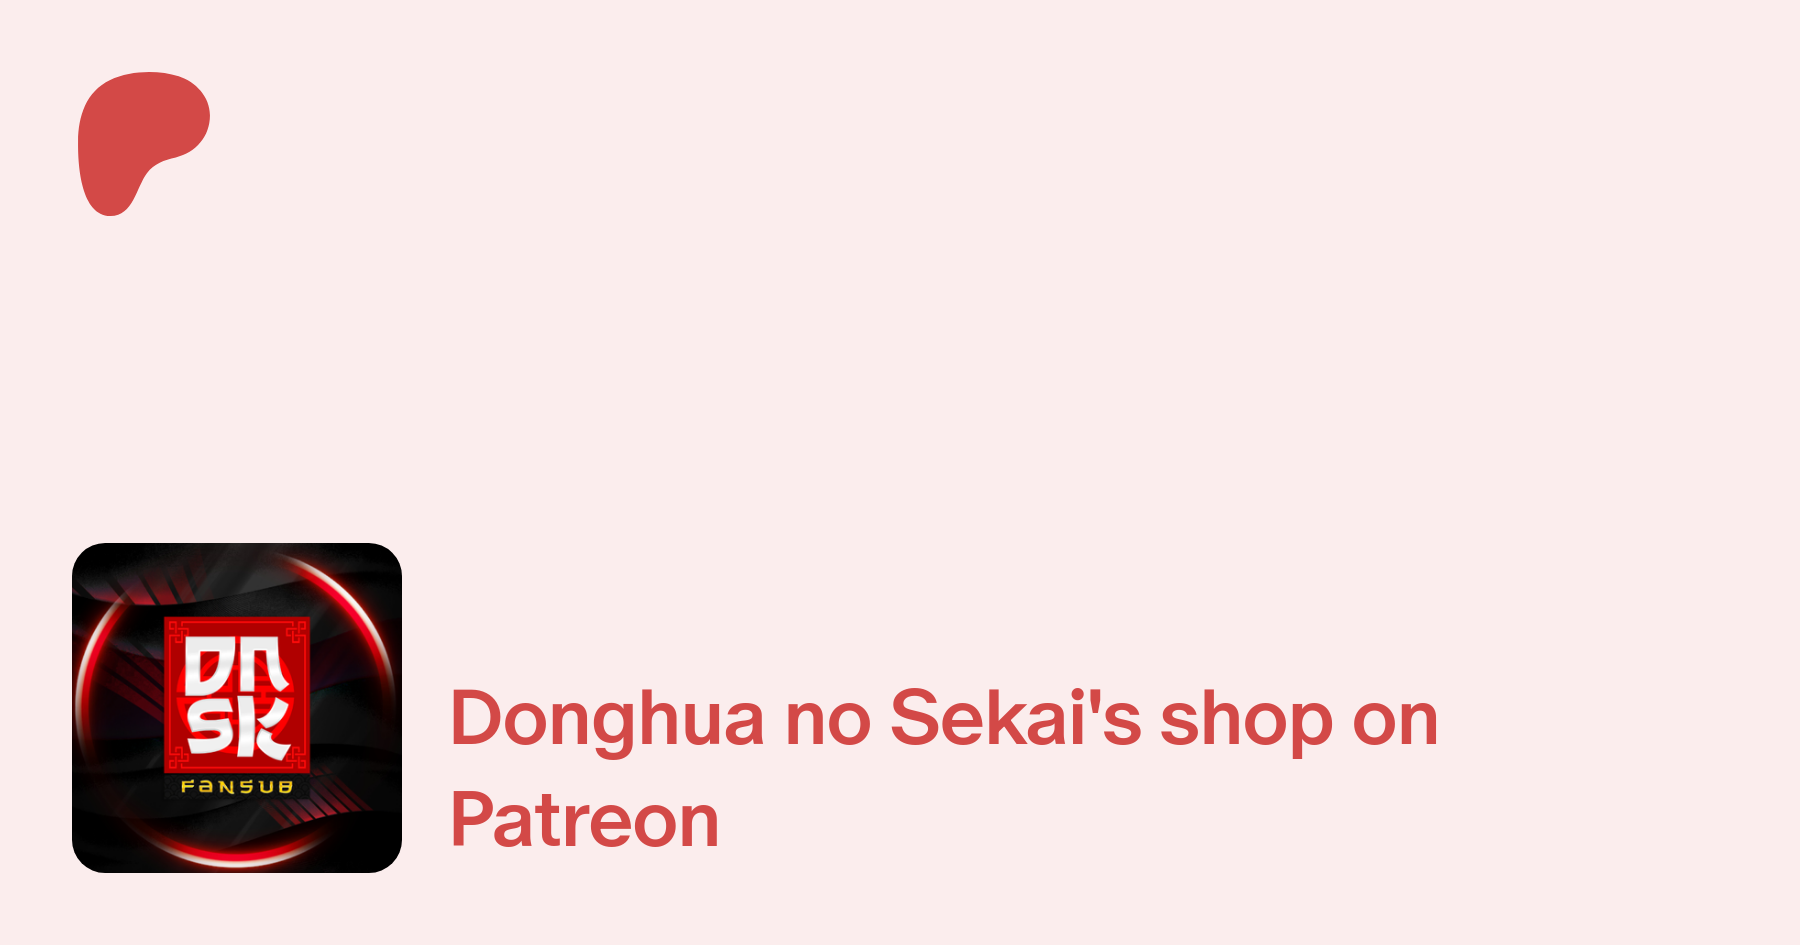 Donghua no Sekai - Fansub (@dnsk.fansub) on Threads